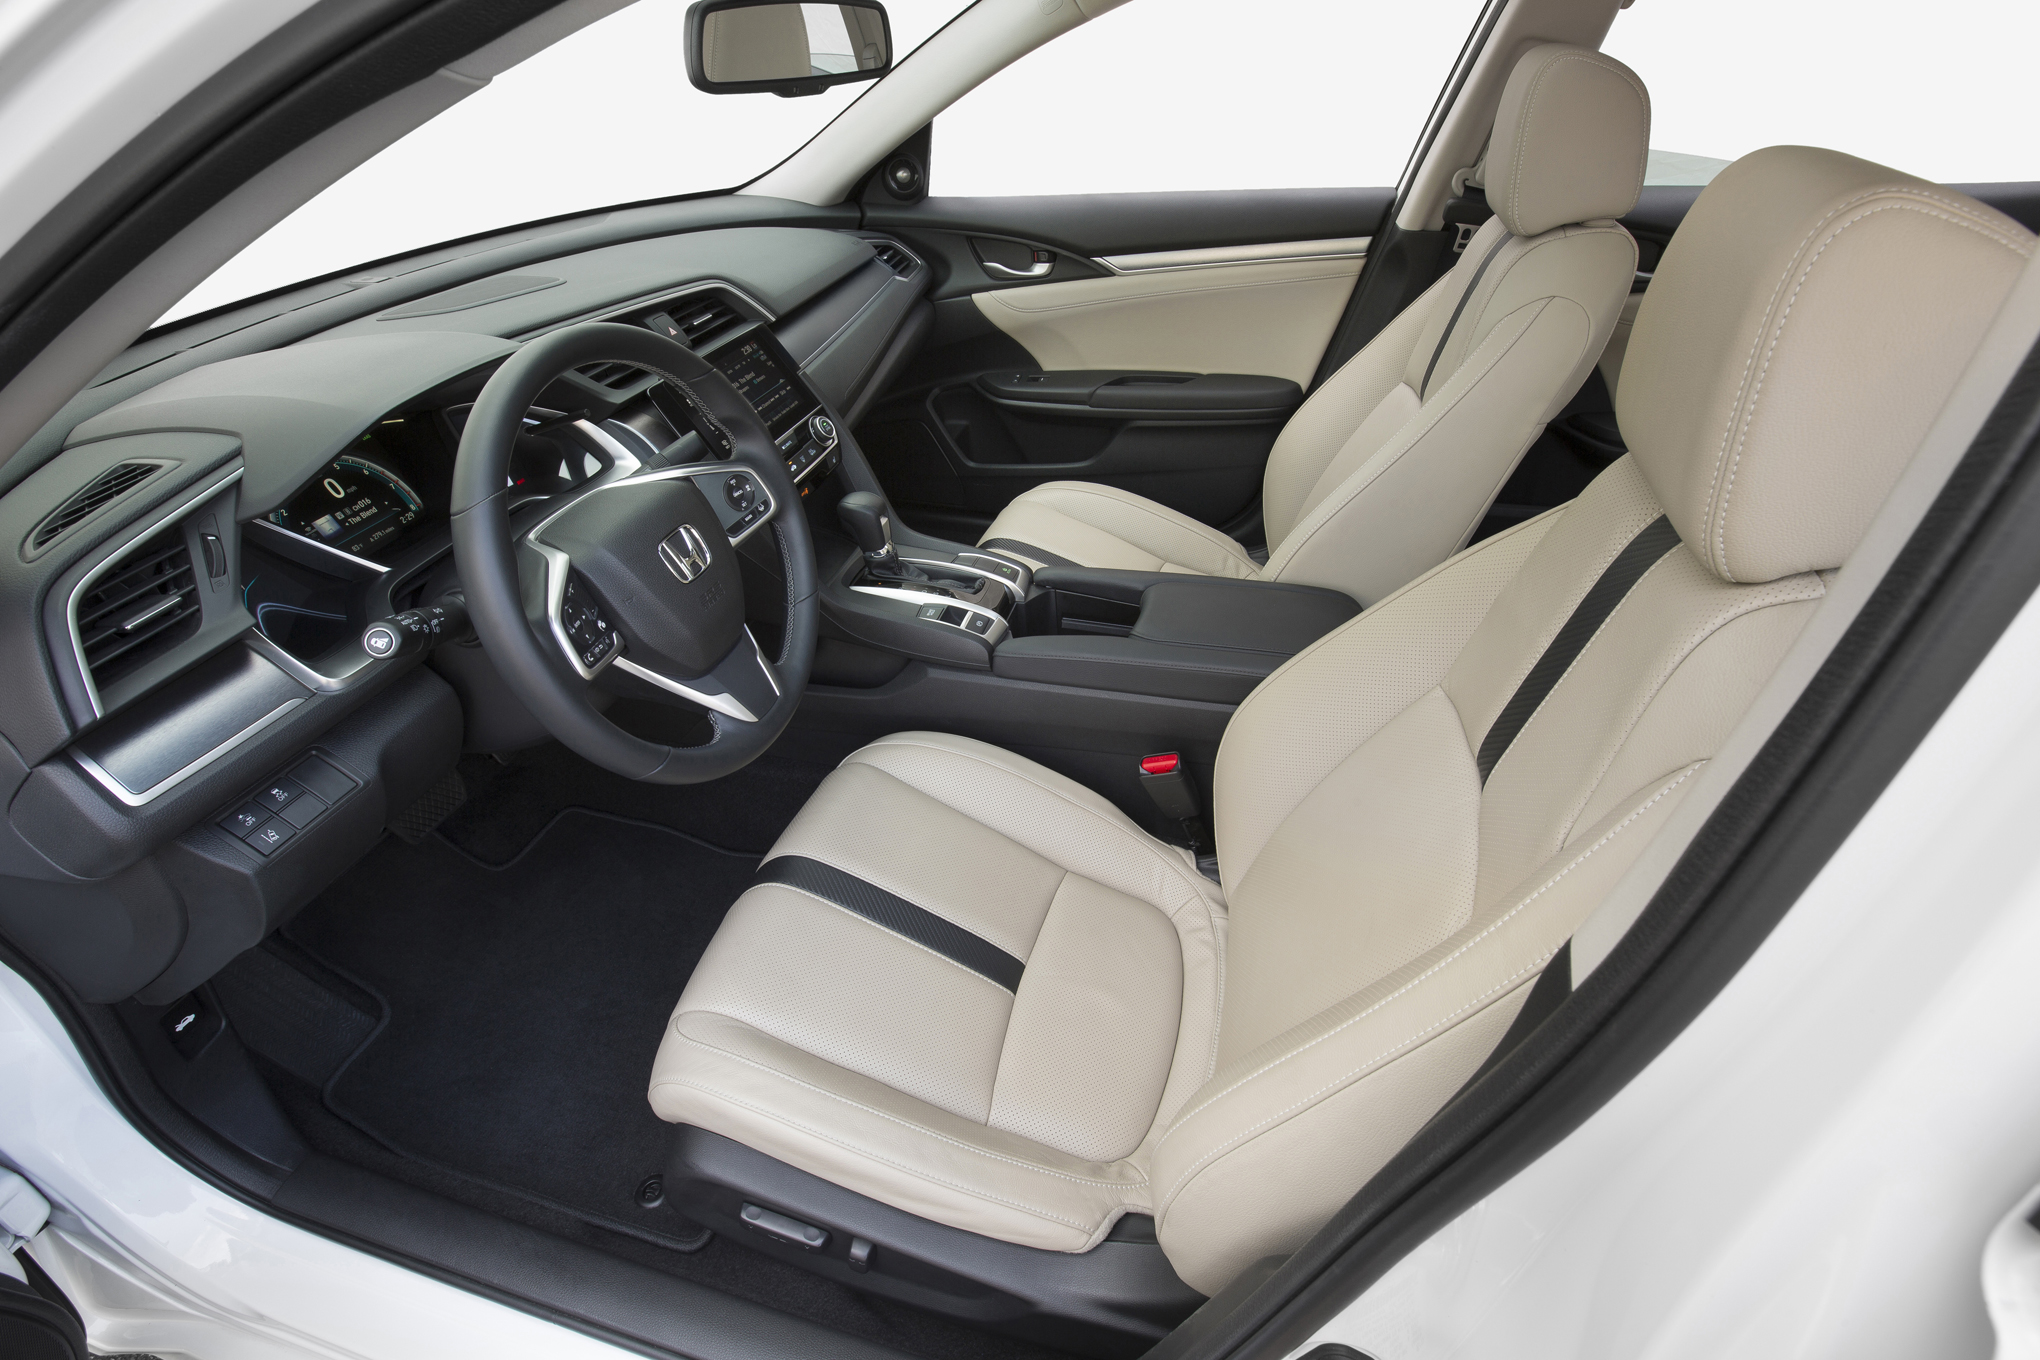 2016-Honda-Civic-Touring-front-interior-seats